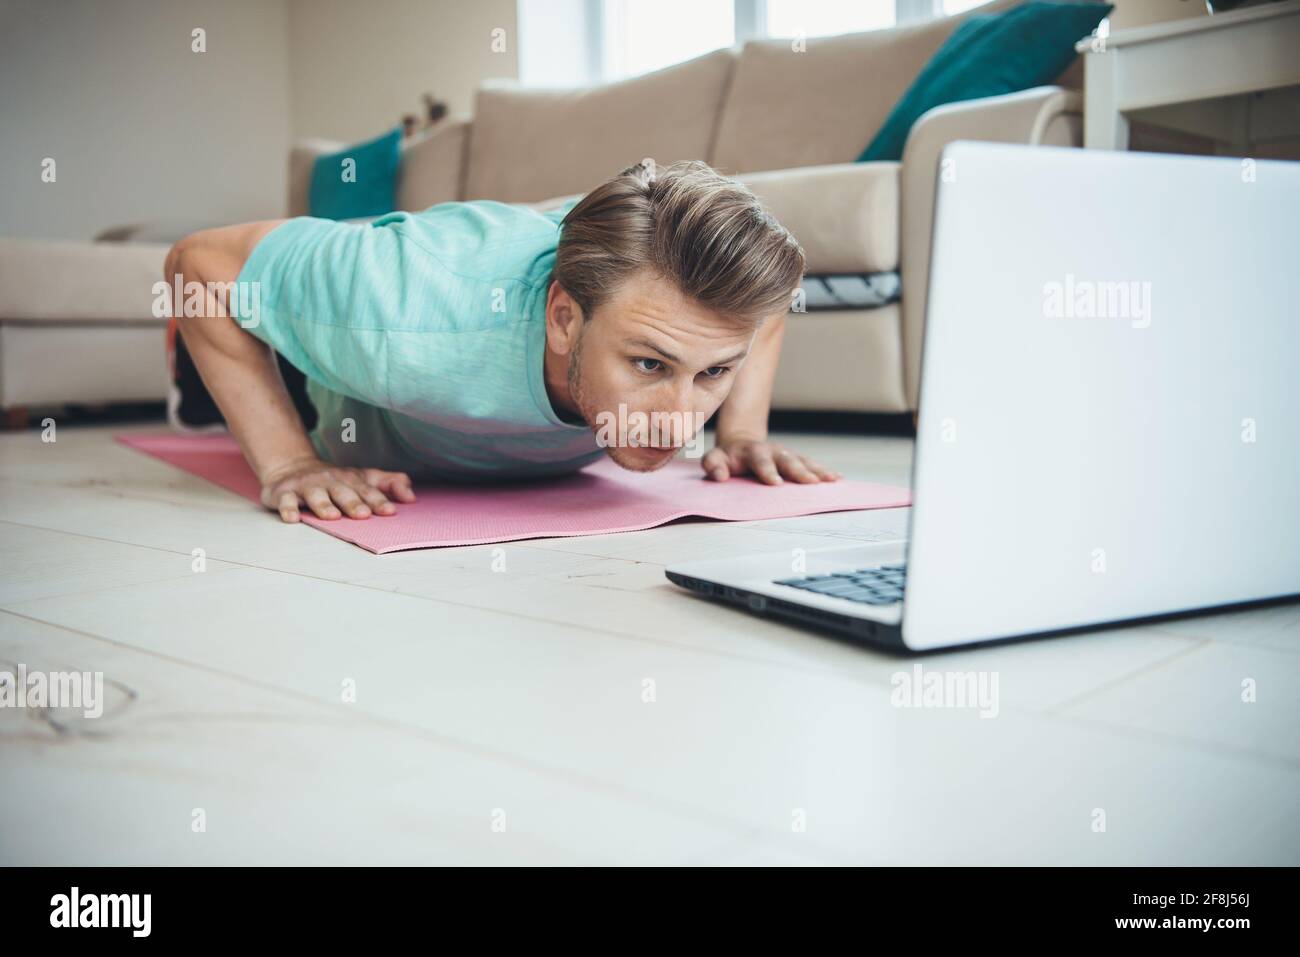 Kaukasischer Mann mit blonden Haaren macht Liegestütze auf dem Während Sie einen Laptop verwenden Stockfoto